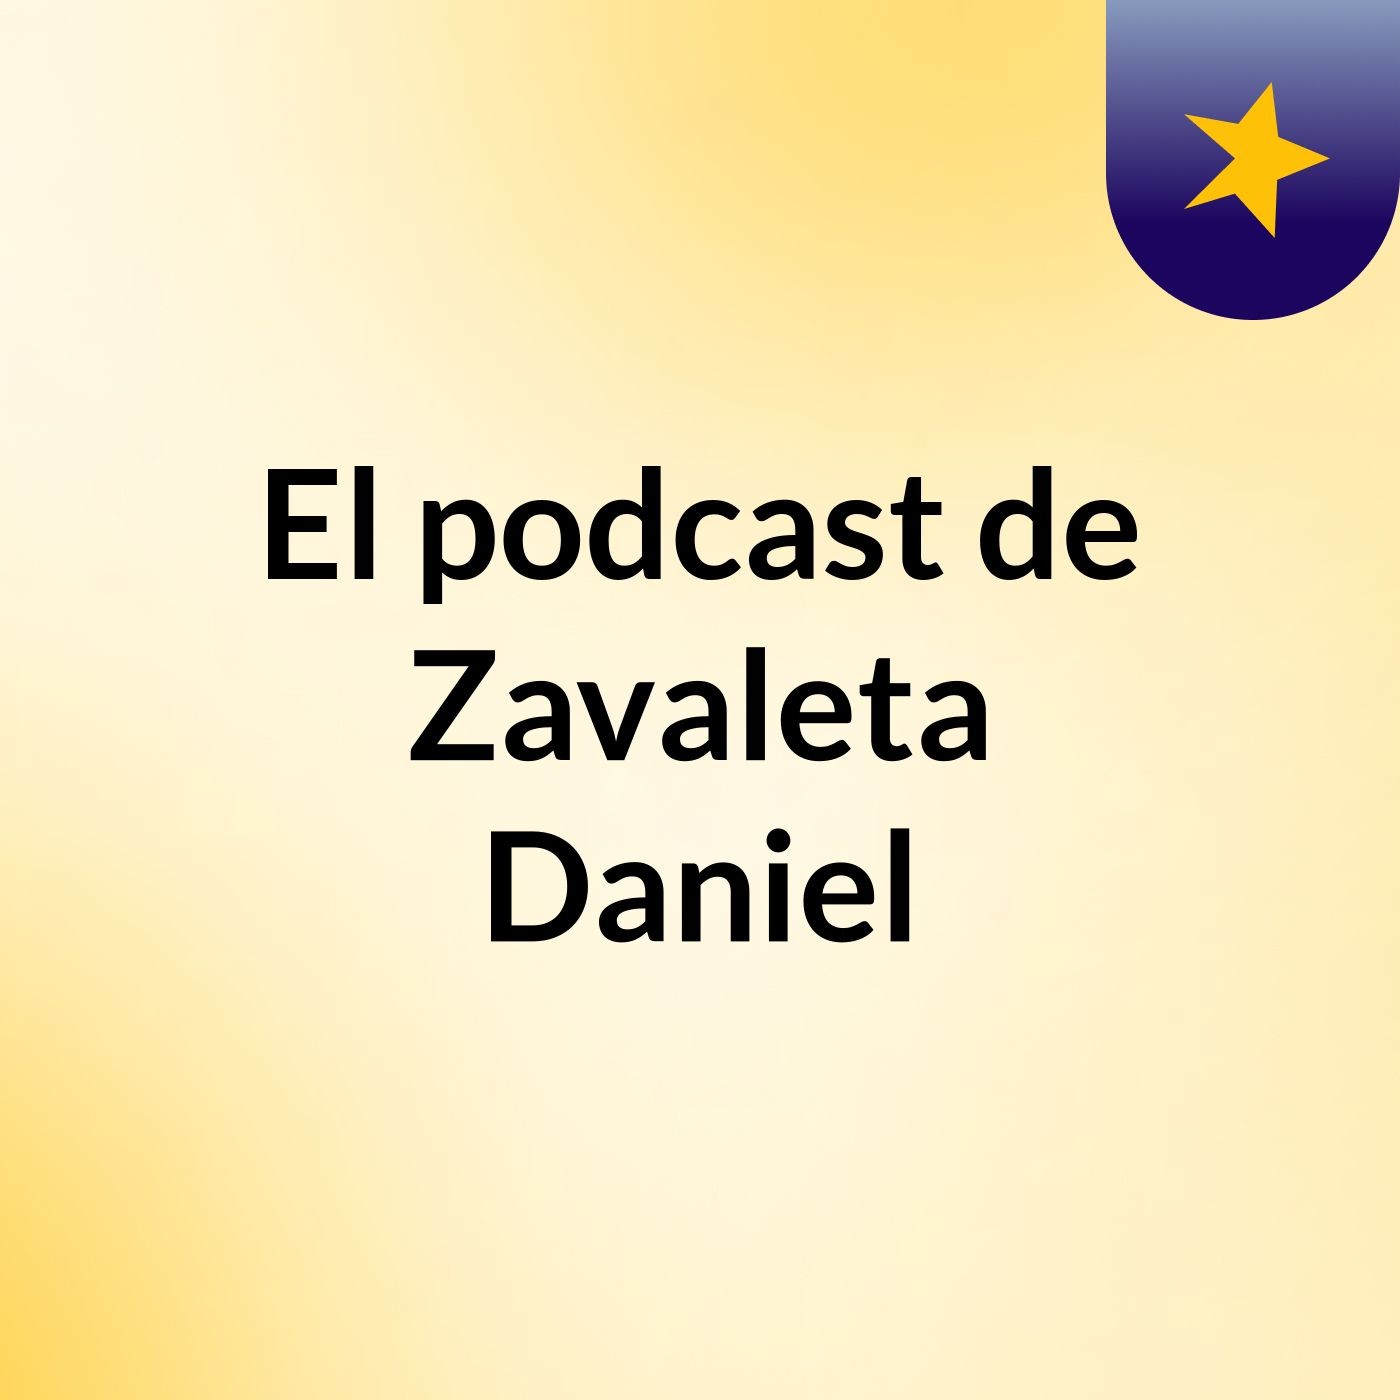 El podcast de Zavaleta Daniel